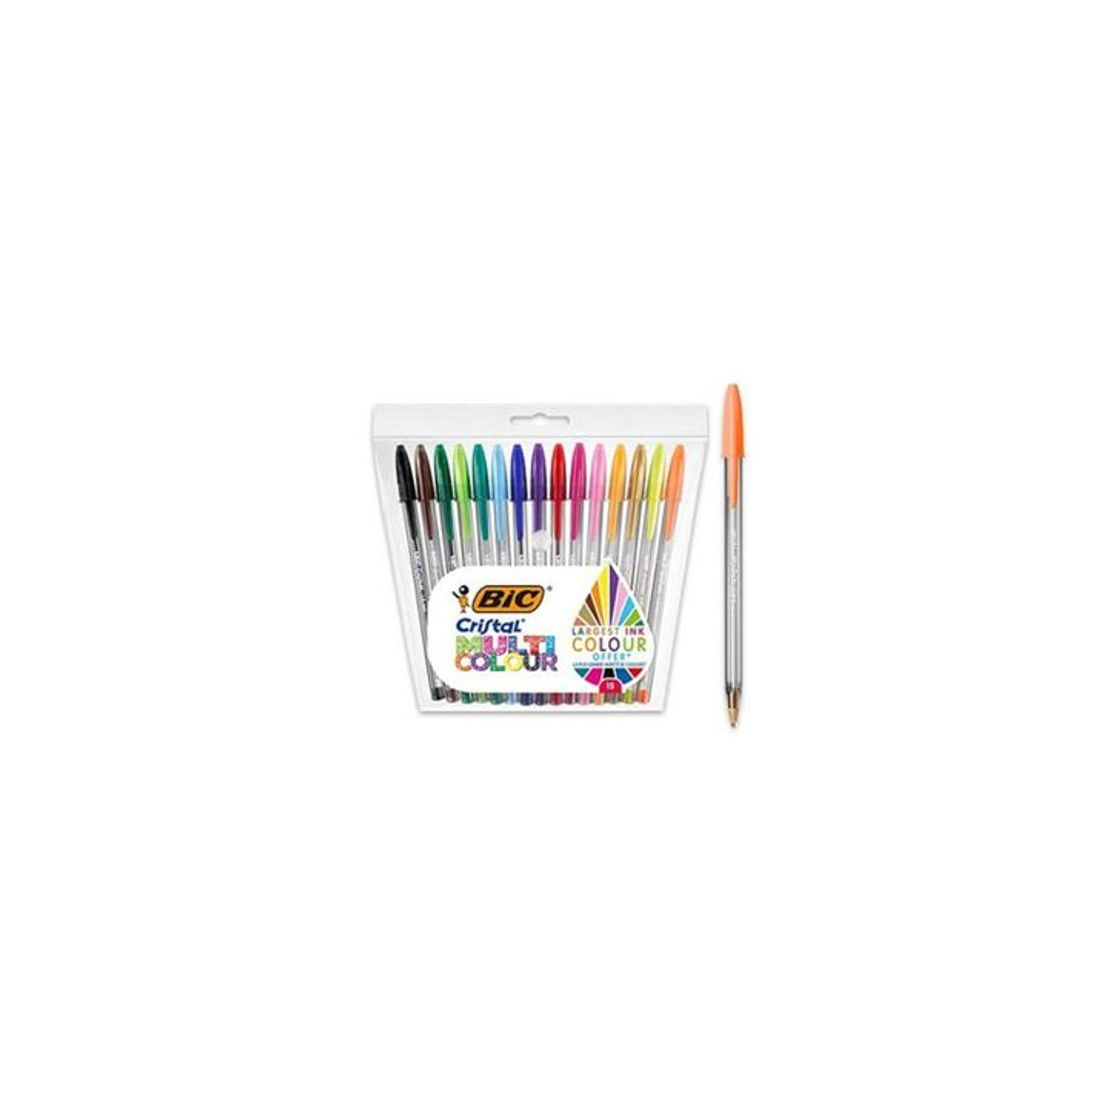 BIC Cristal Multicolour - Pack de 15 unidades, bolígrafos de punta ancha